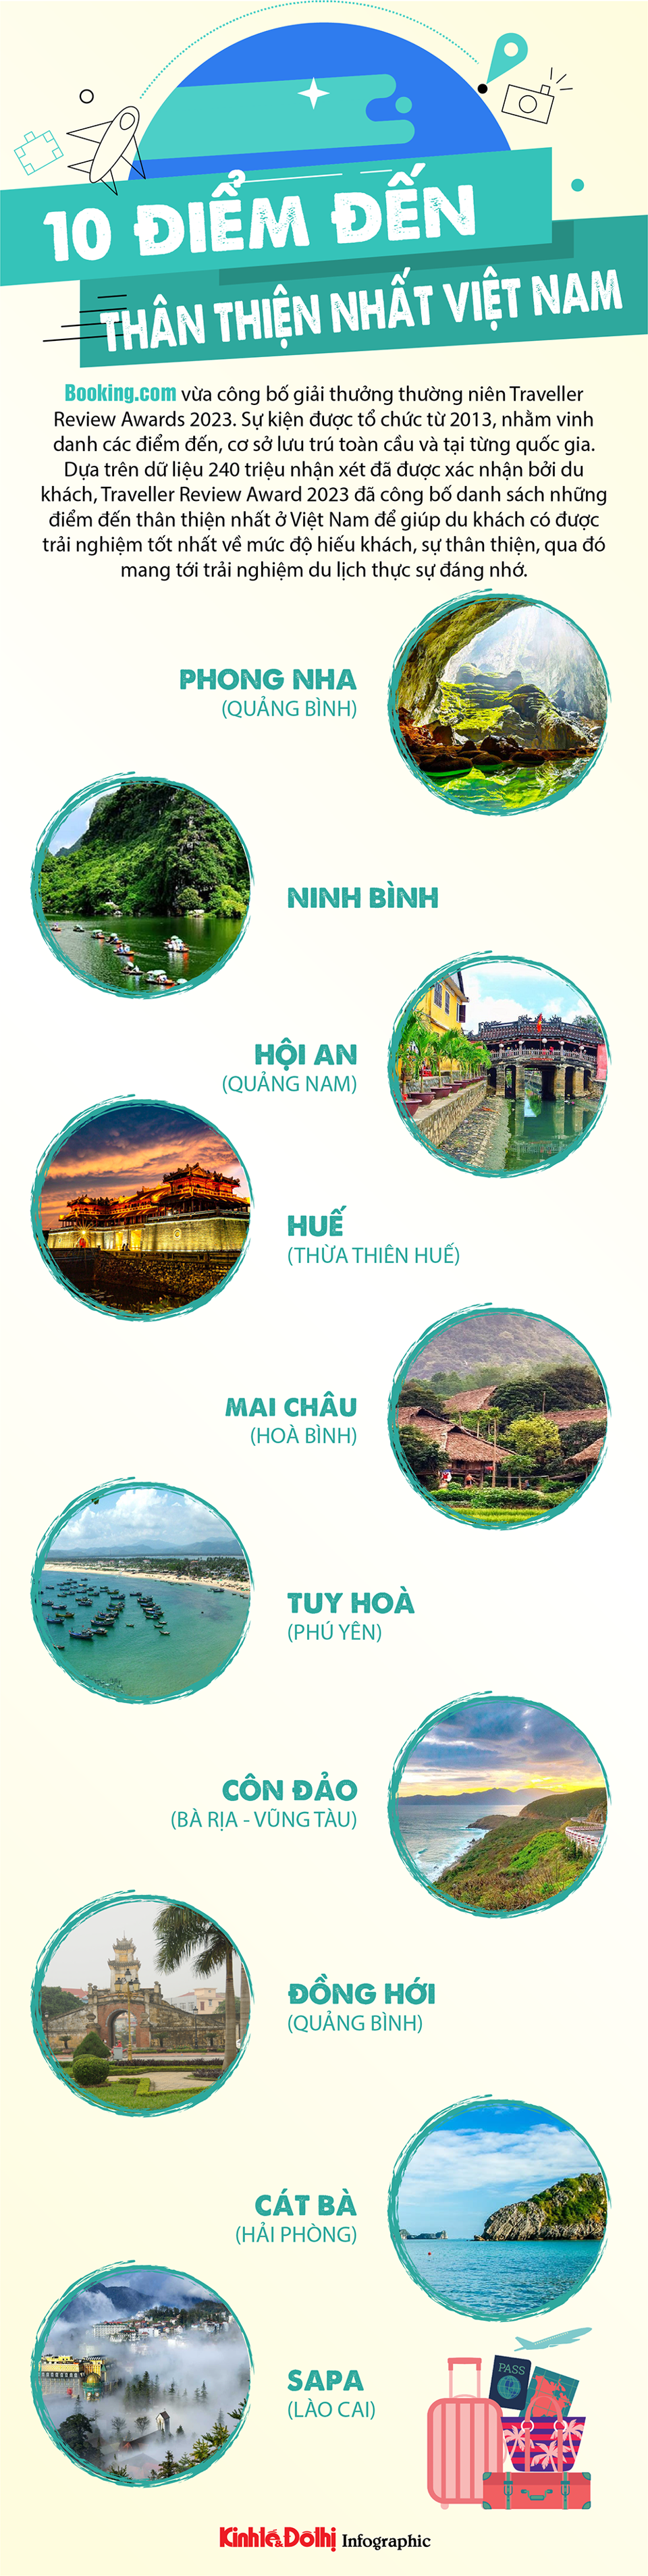 Bất ngờ danh sách 10 địa danh du lịch thân thiện nhất Việt Nam - Ảnh 1